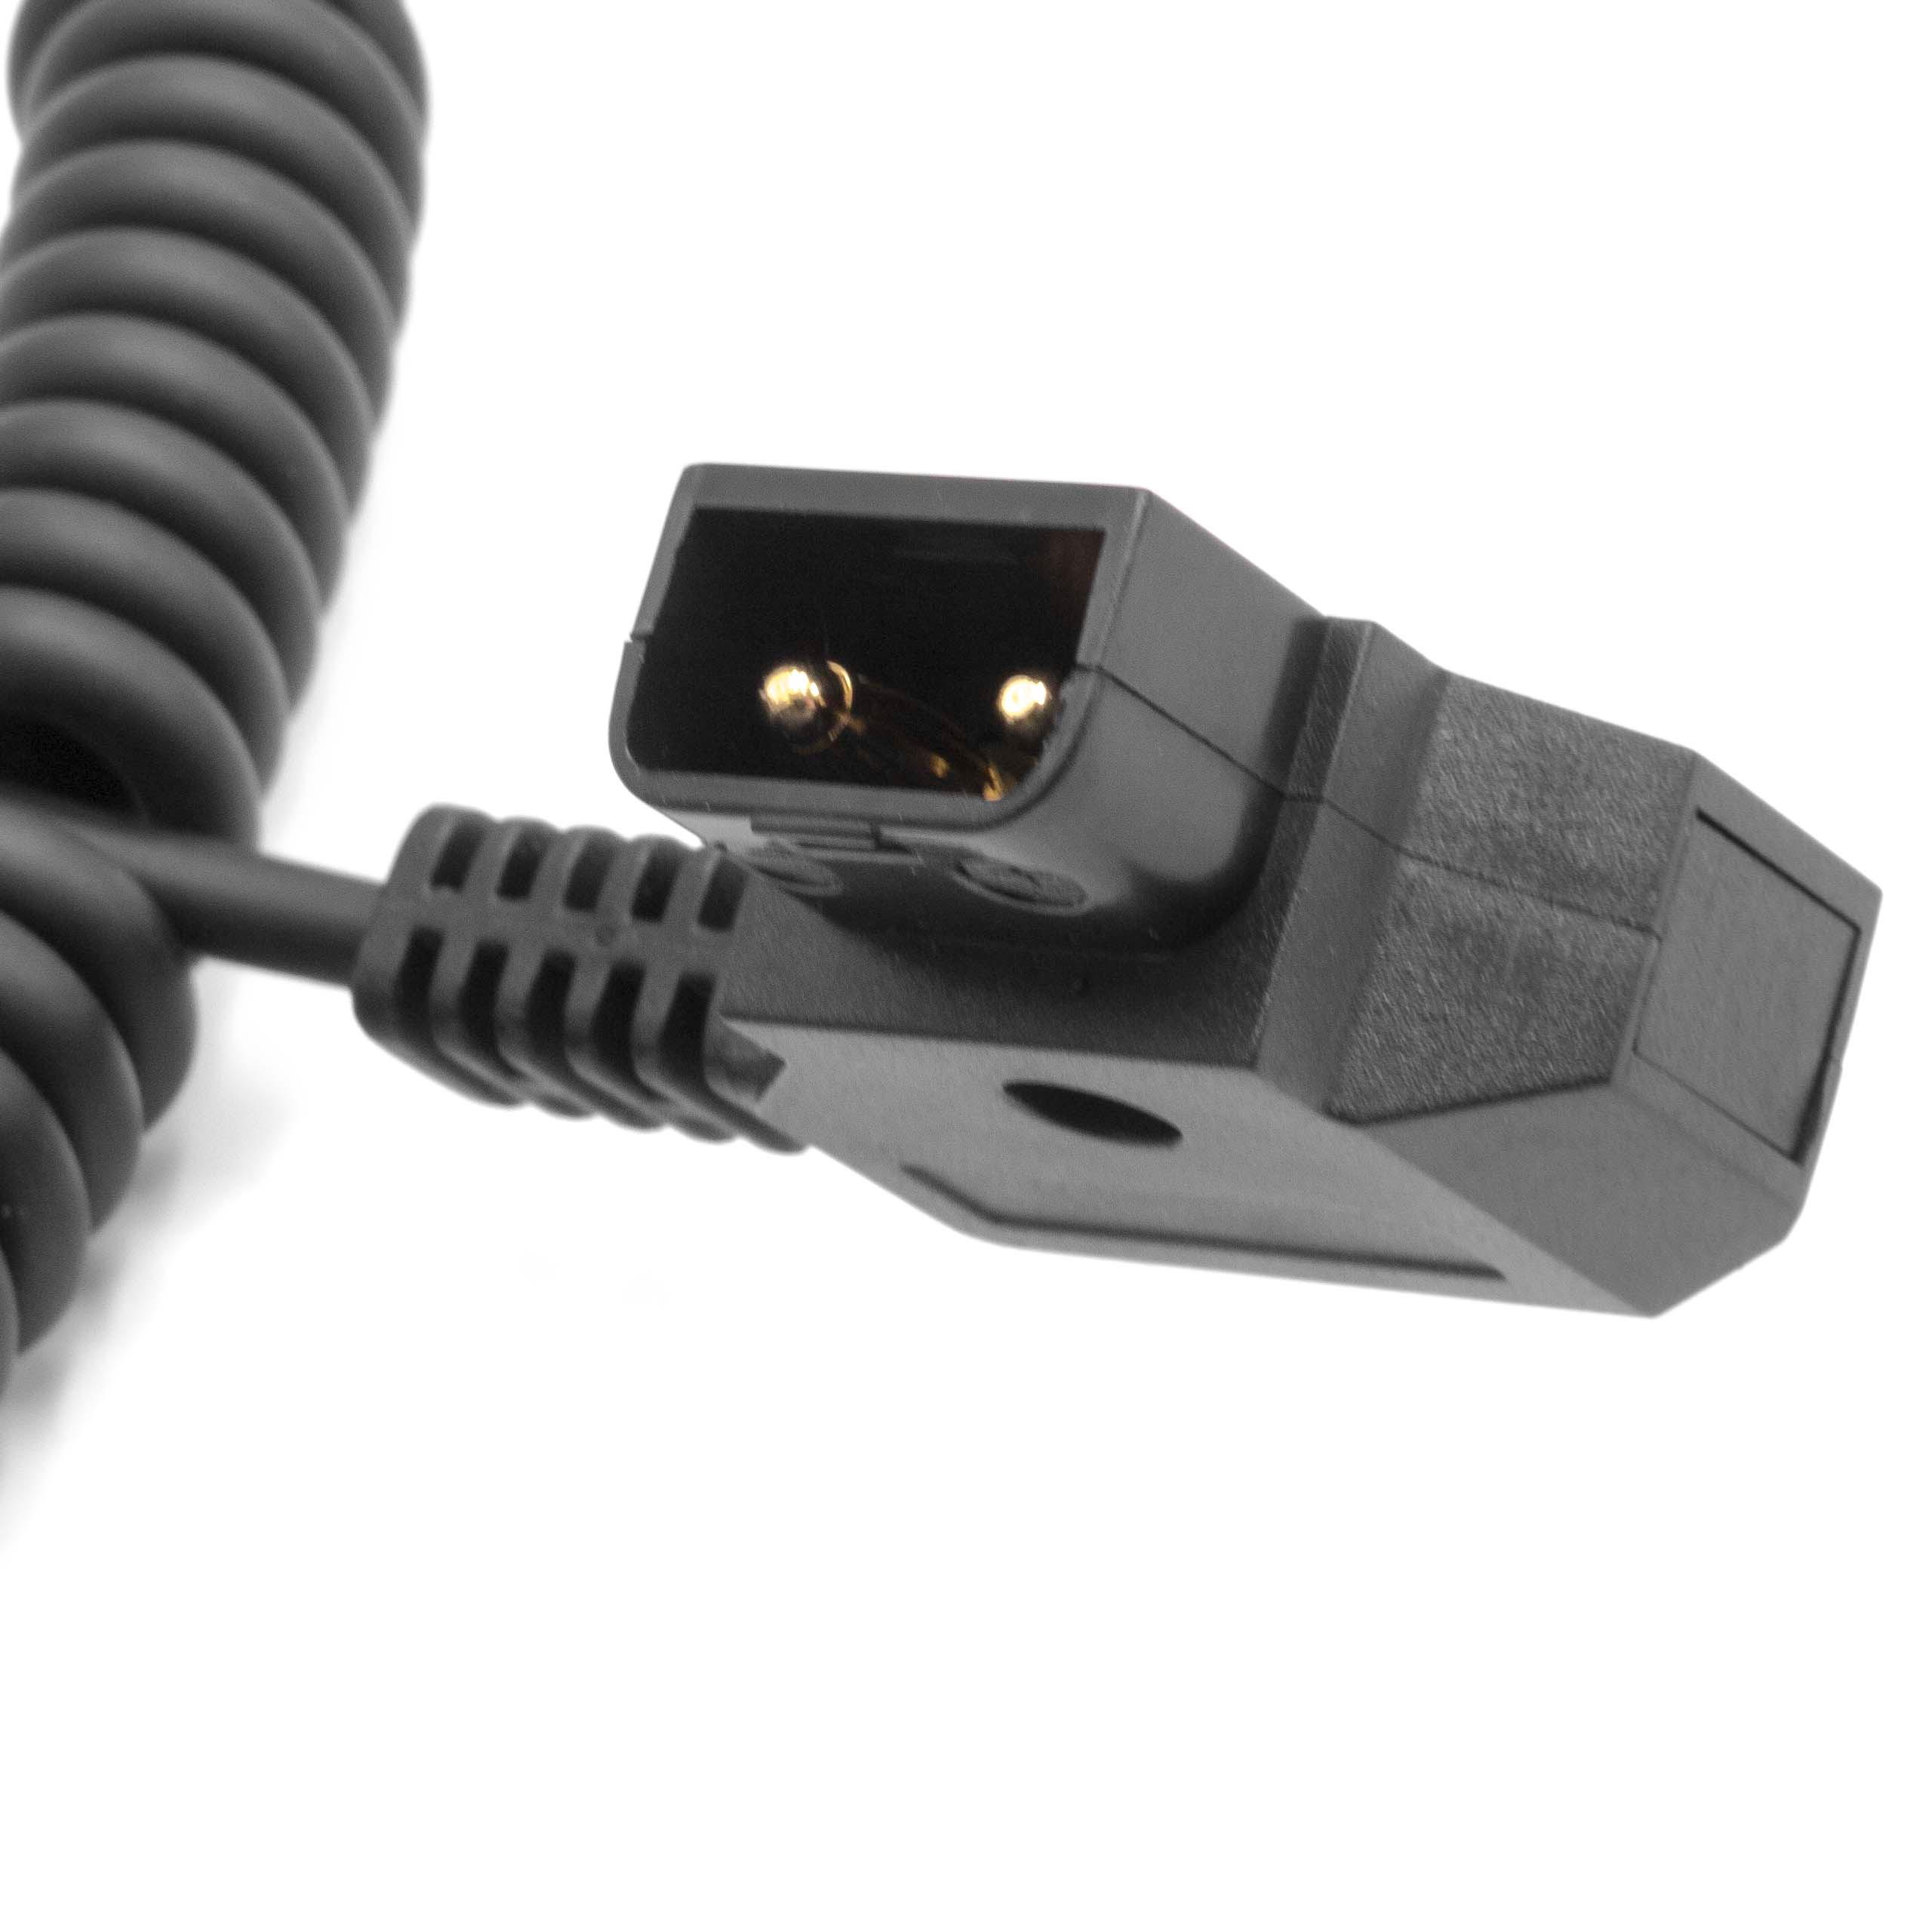  Câble d'alimentation D-Tap vers mini XLR mâle 4 broches compatible avec caméscope, caméra - Câble spiralé